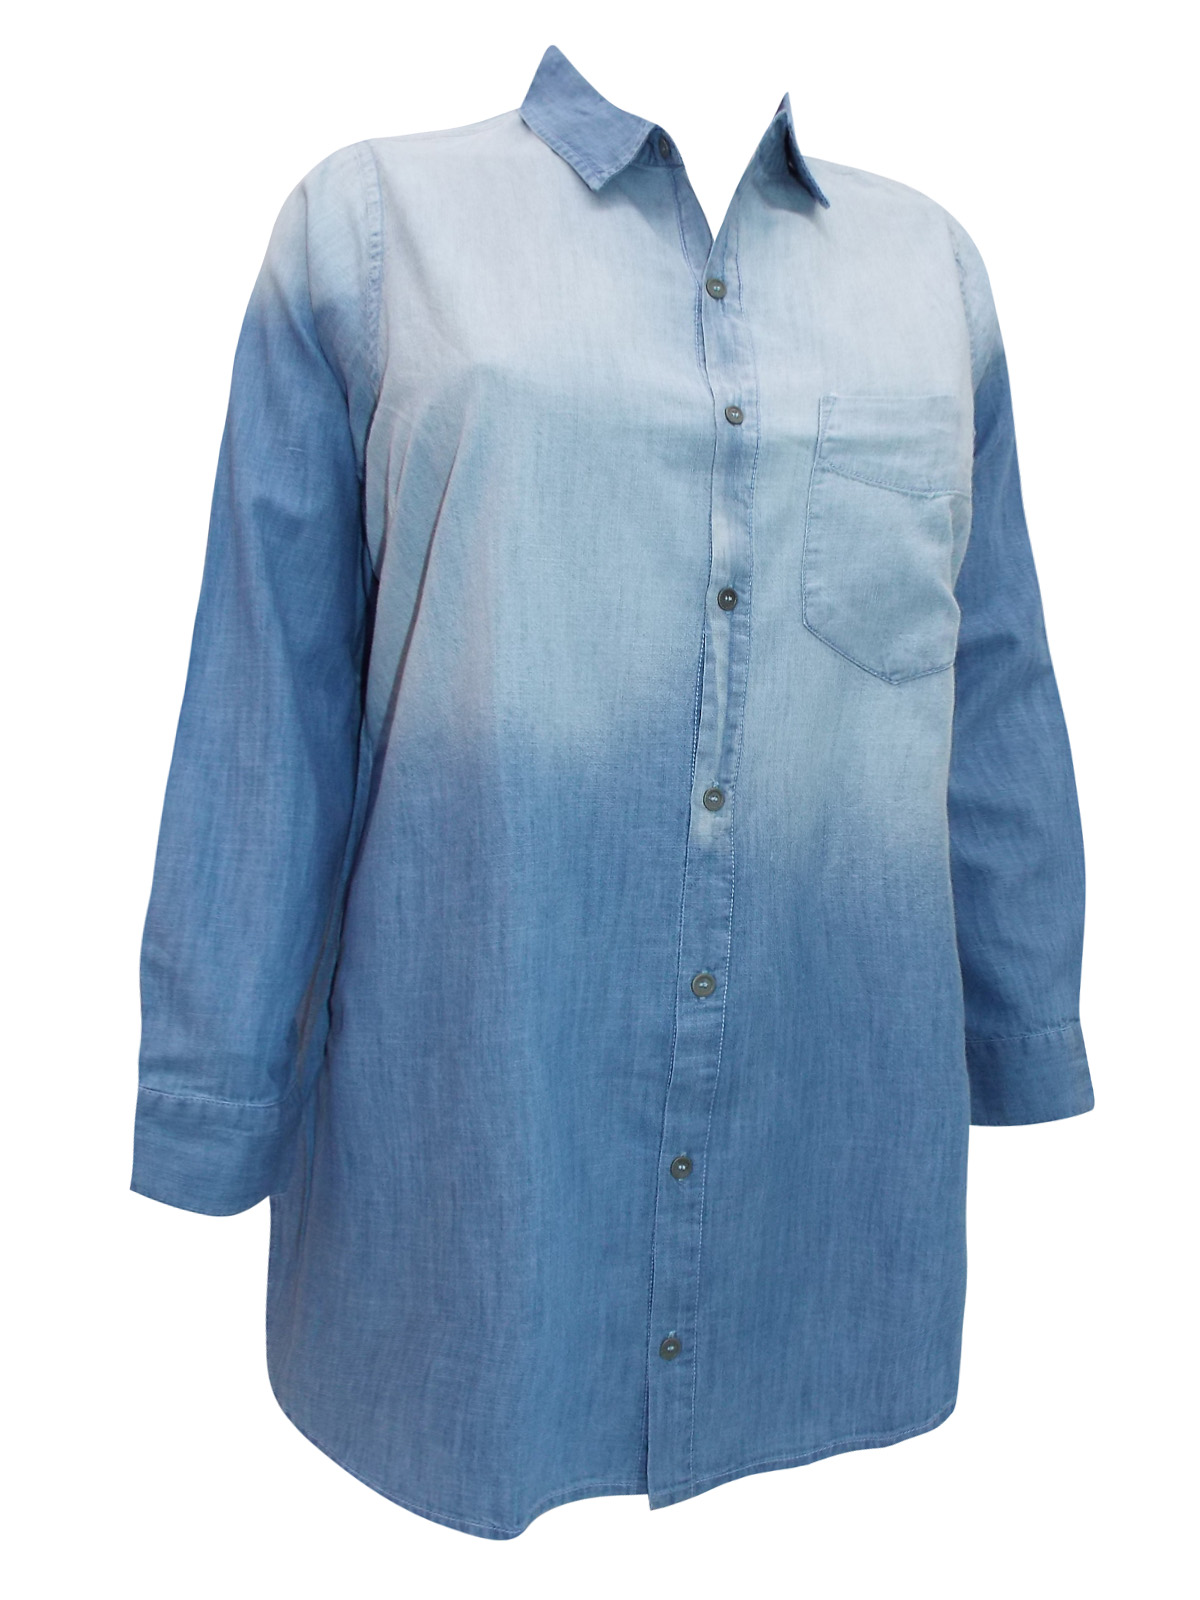 CURVE - - Curve BLUE Pure Cotton Ombre Denim Shirt - Plus Size 16 to 34/36